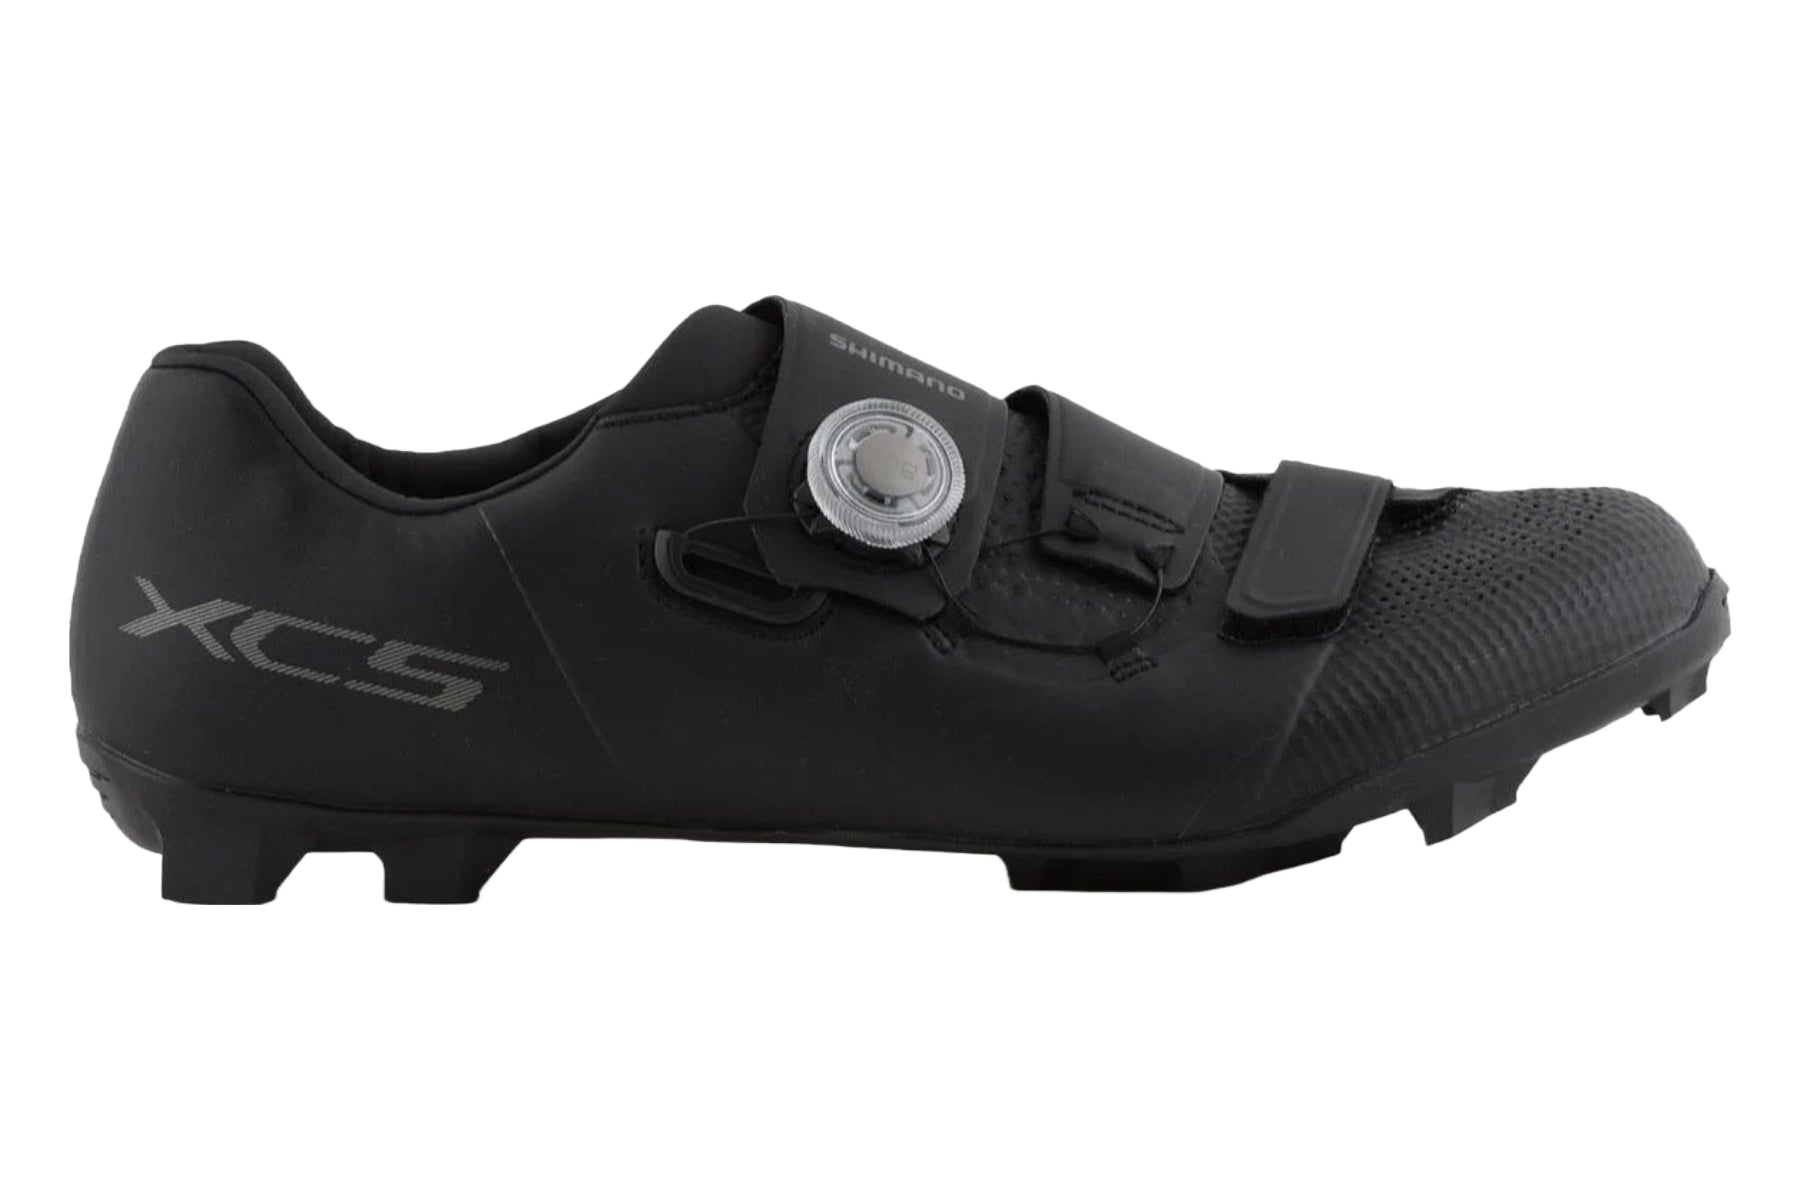 Photos - Cycling Shoes Shimano XC5 Mountain Shoes - Black - 43 ESHXC502MCL01S43000 